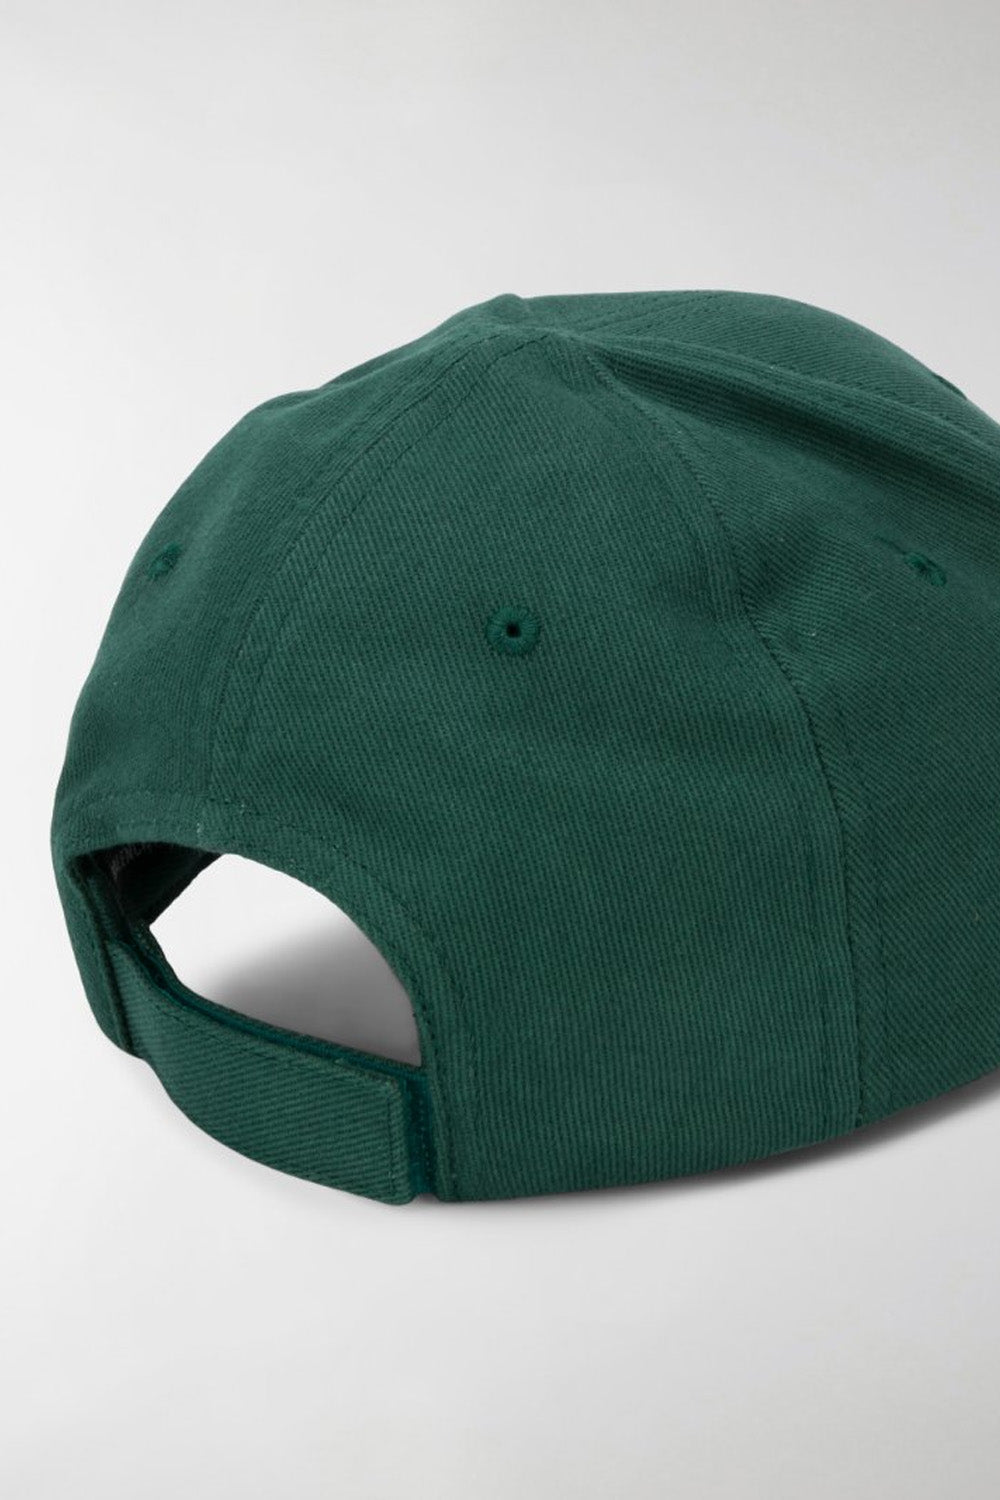 Balenciaga baseball cap green